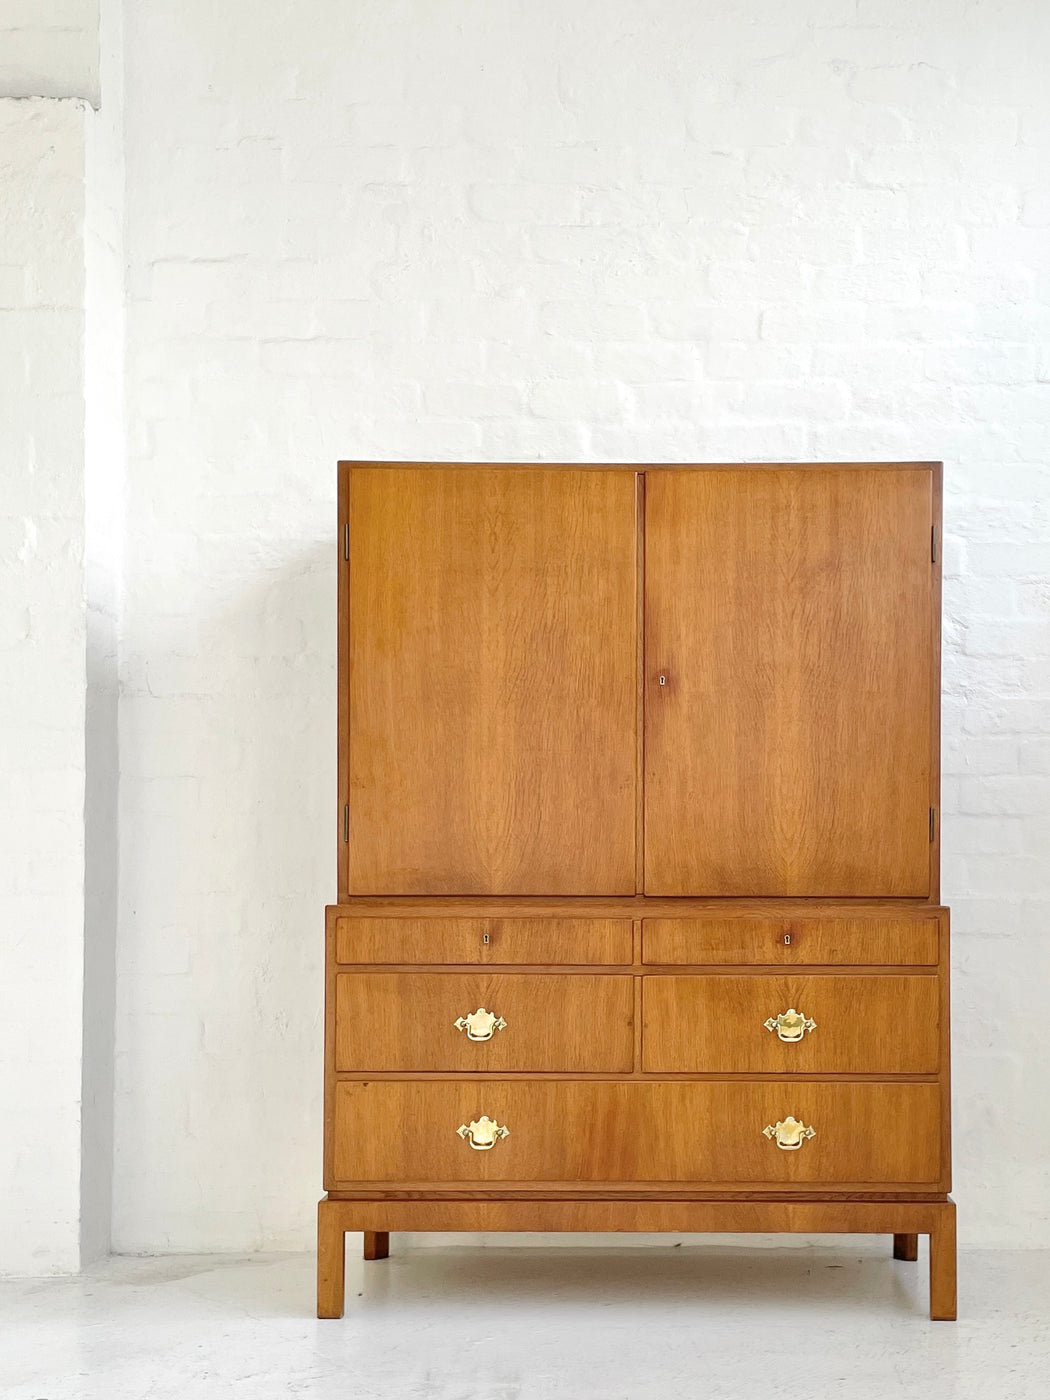 Danish Oak Sideboard Cabinet